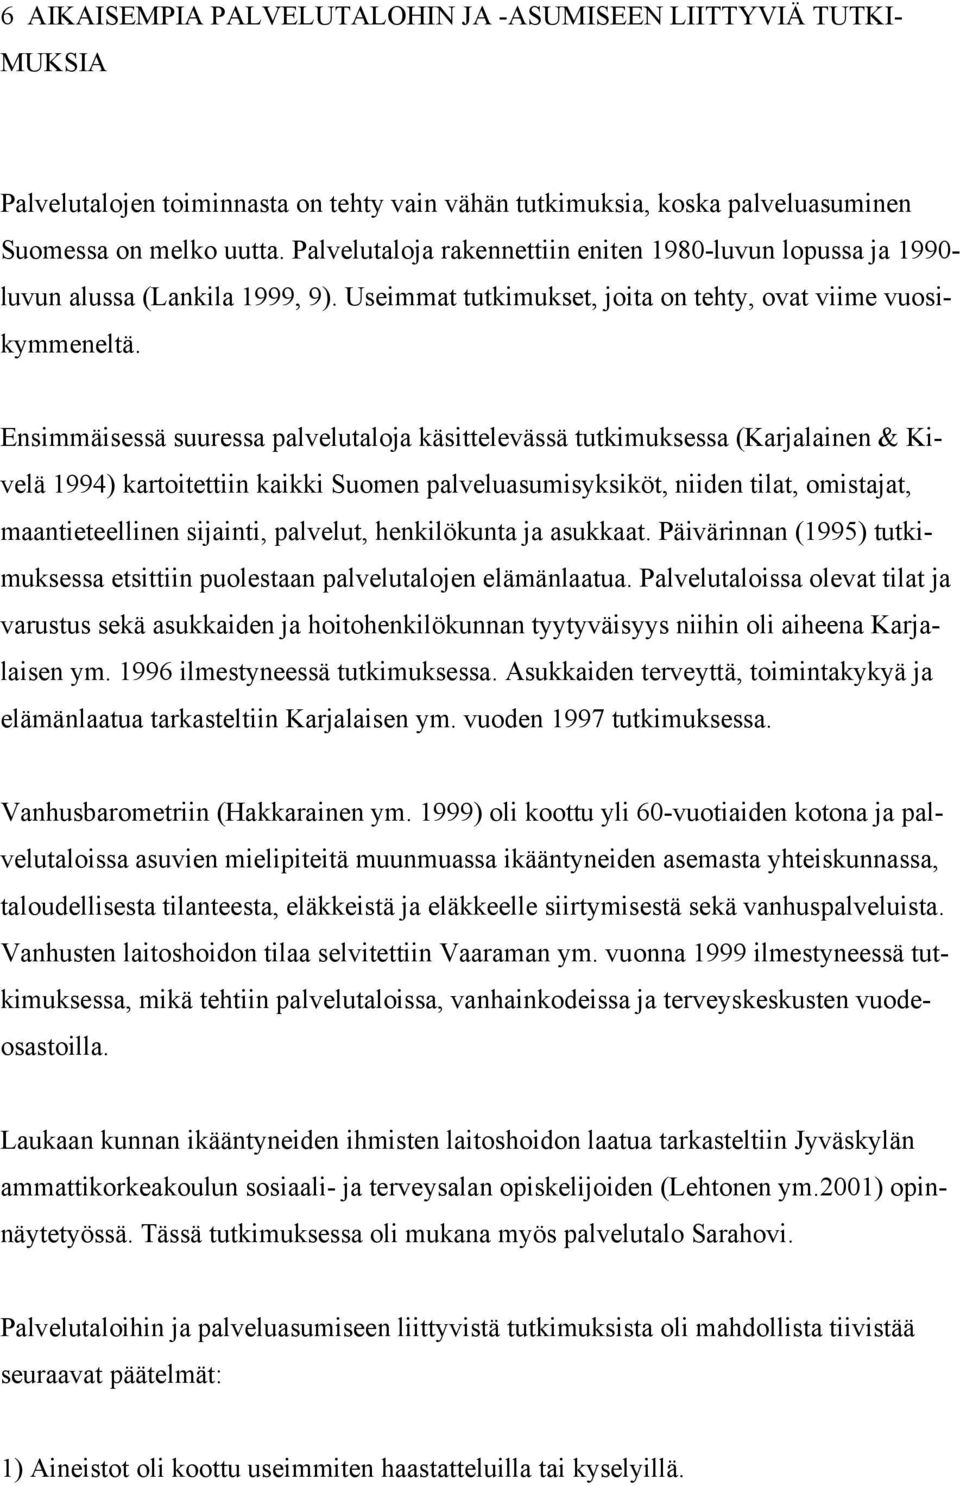 Ensimmäisessä suuressa palvelutaloja käsittelevässä tutkimuksessa (Karjalainen & Kivelä 1994) kartoitettiin kaikki Suomen palveluasumisyksiköt, niiden tilat, omistajat, maantieteellinen sijainti,